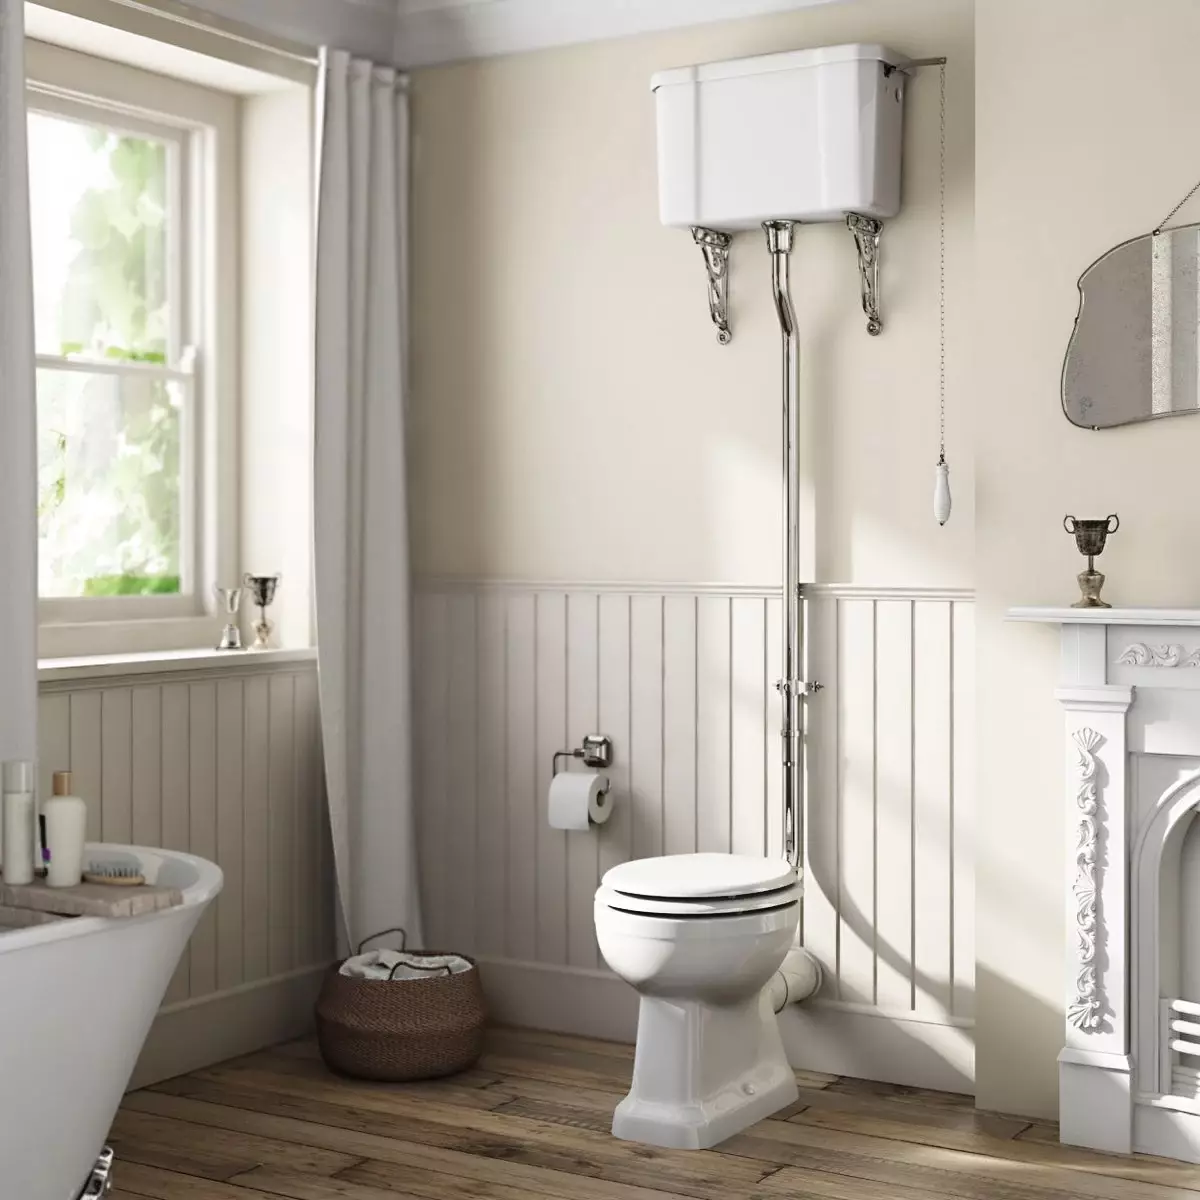 Retro WC: Rodiny WC v štýle klasického retro. Koileties-kompaktné a zavesené toalety s vysokými hornými nádržami, inými modelmi 10518_6